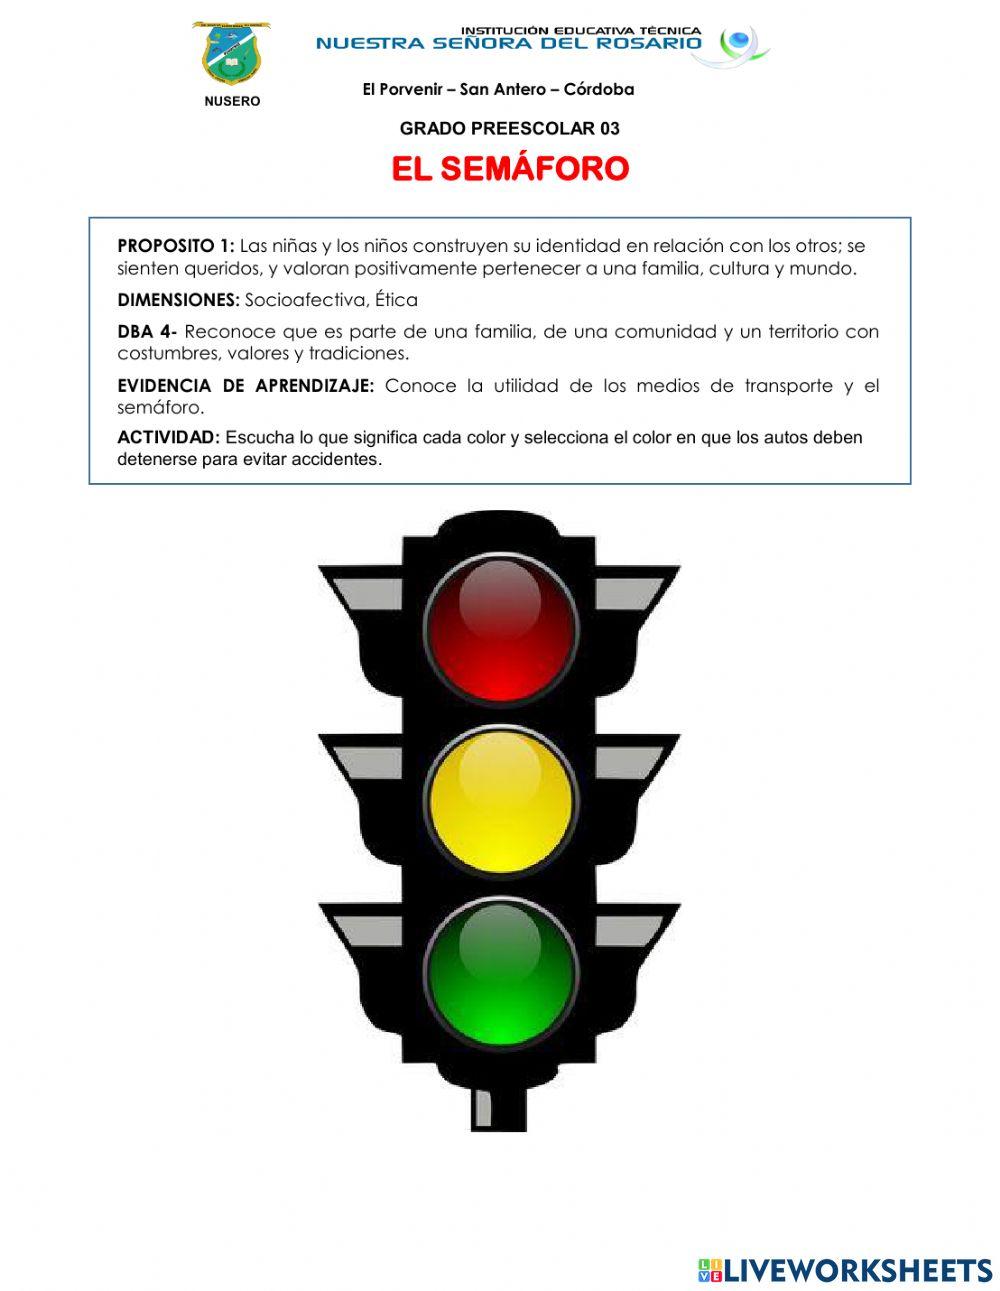 El semáforo